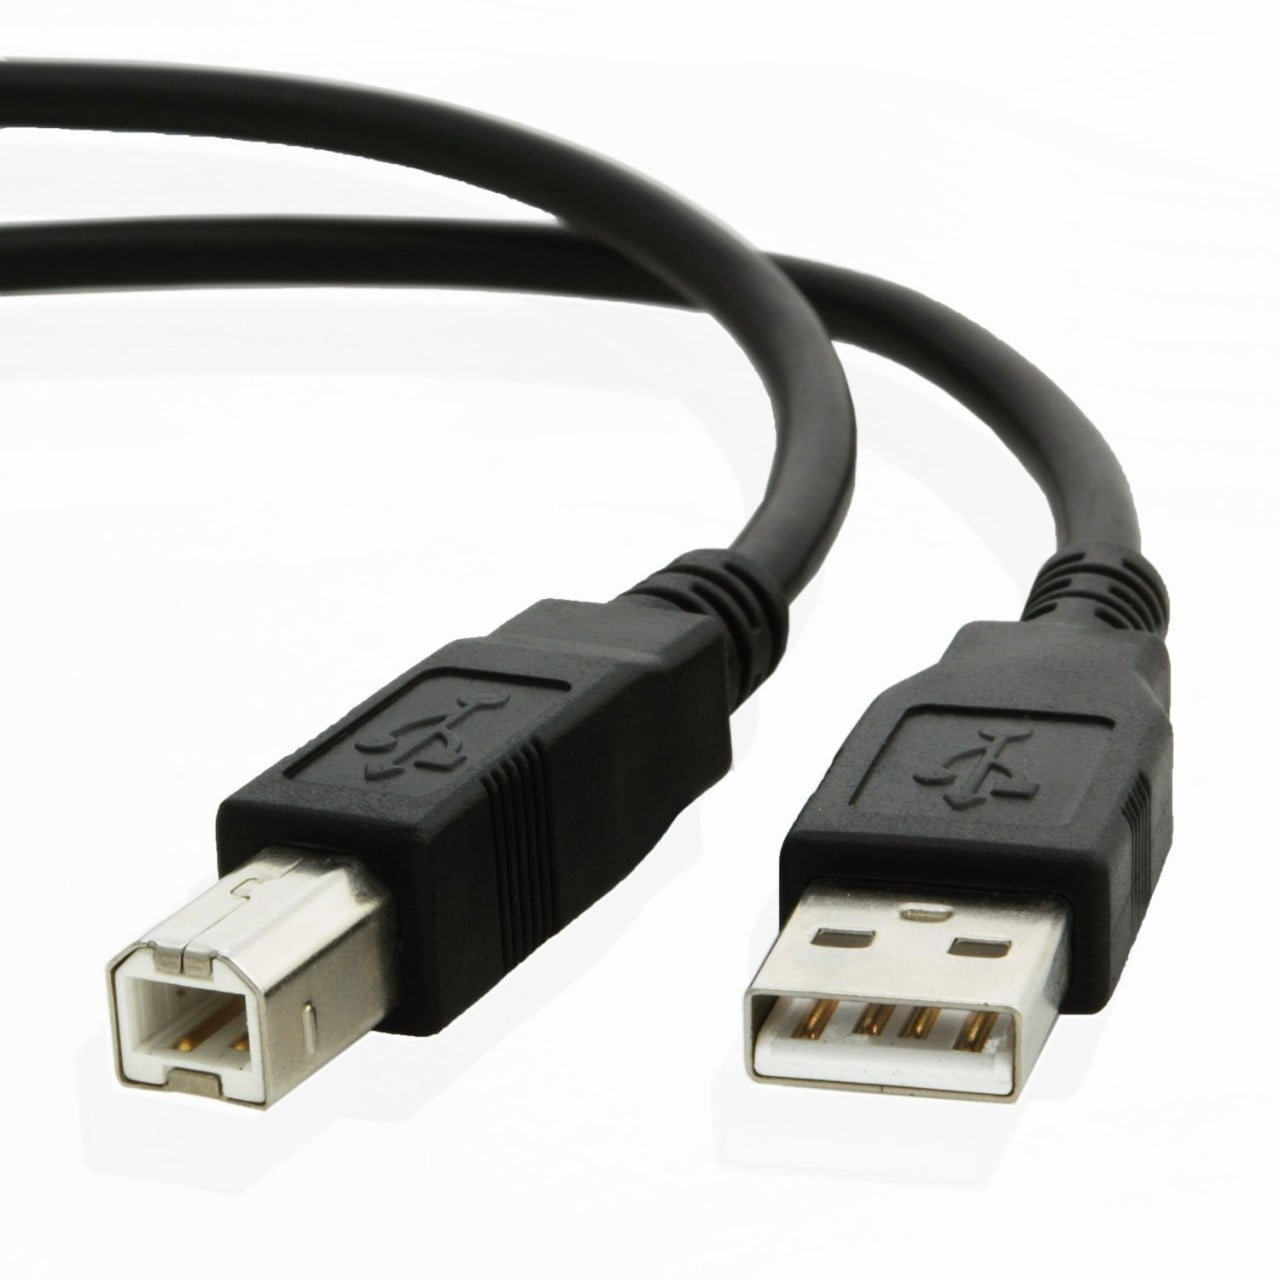 Pour HP Envy 4520 5660 7640 e-AiO imprimante Câble d'alimentation secteur Lead Figure 8 UK Plug 